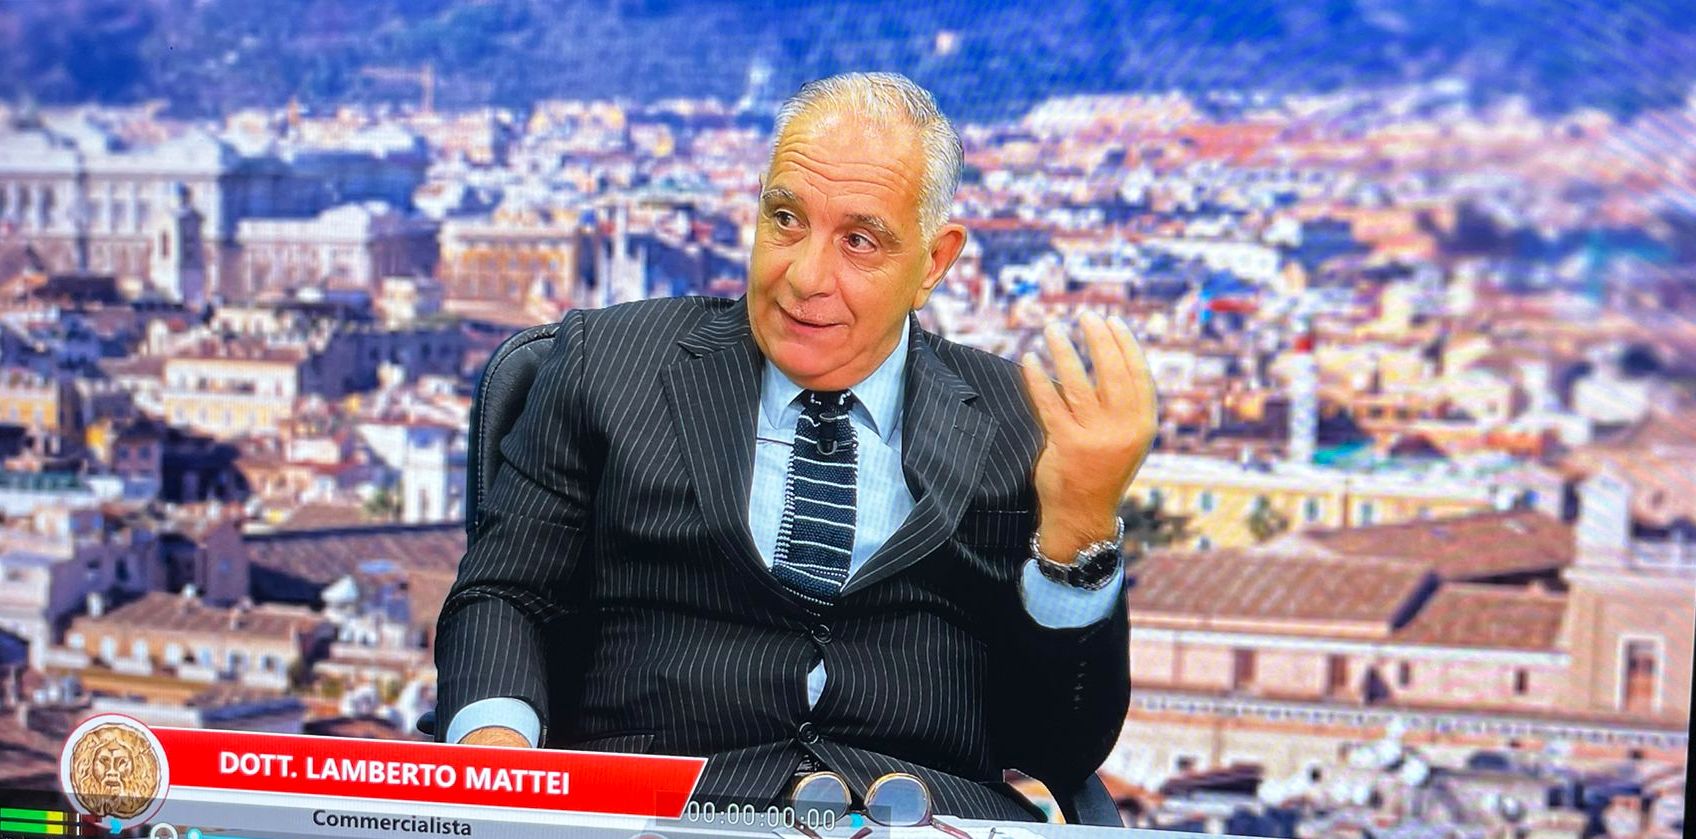 Riforma dello sport, Lamberto Mattei in X commissione per gli emendamenti ai decreti attuativi